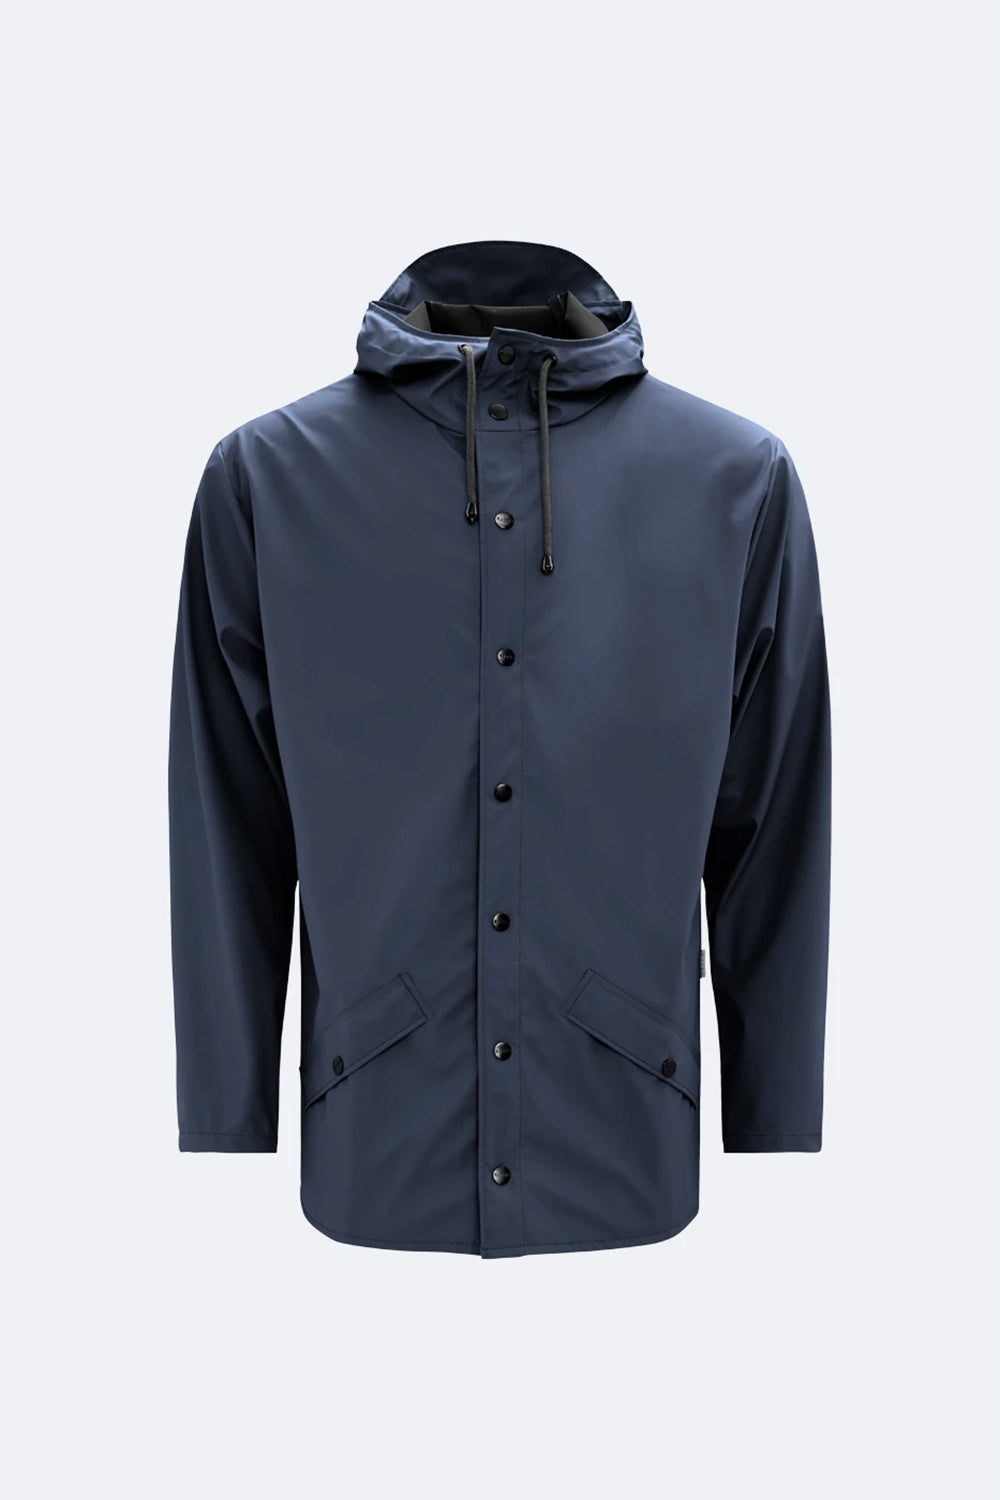 Rains Jacket (Navy Blue)